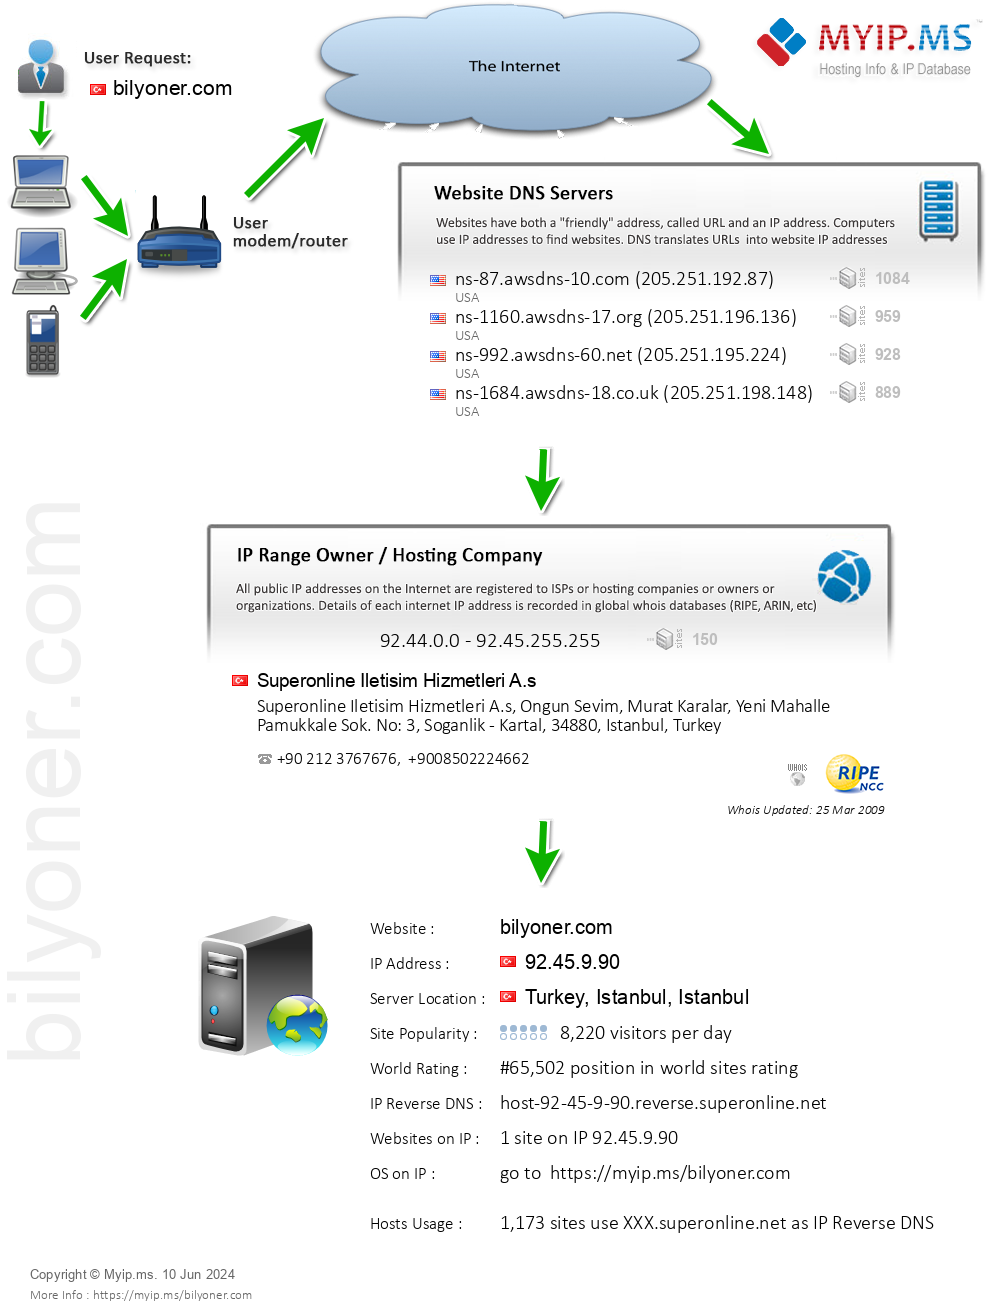 Bilyoner.com - Website Hosting Visual IP Diagram